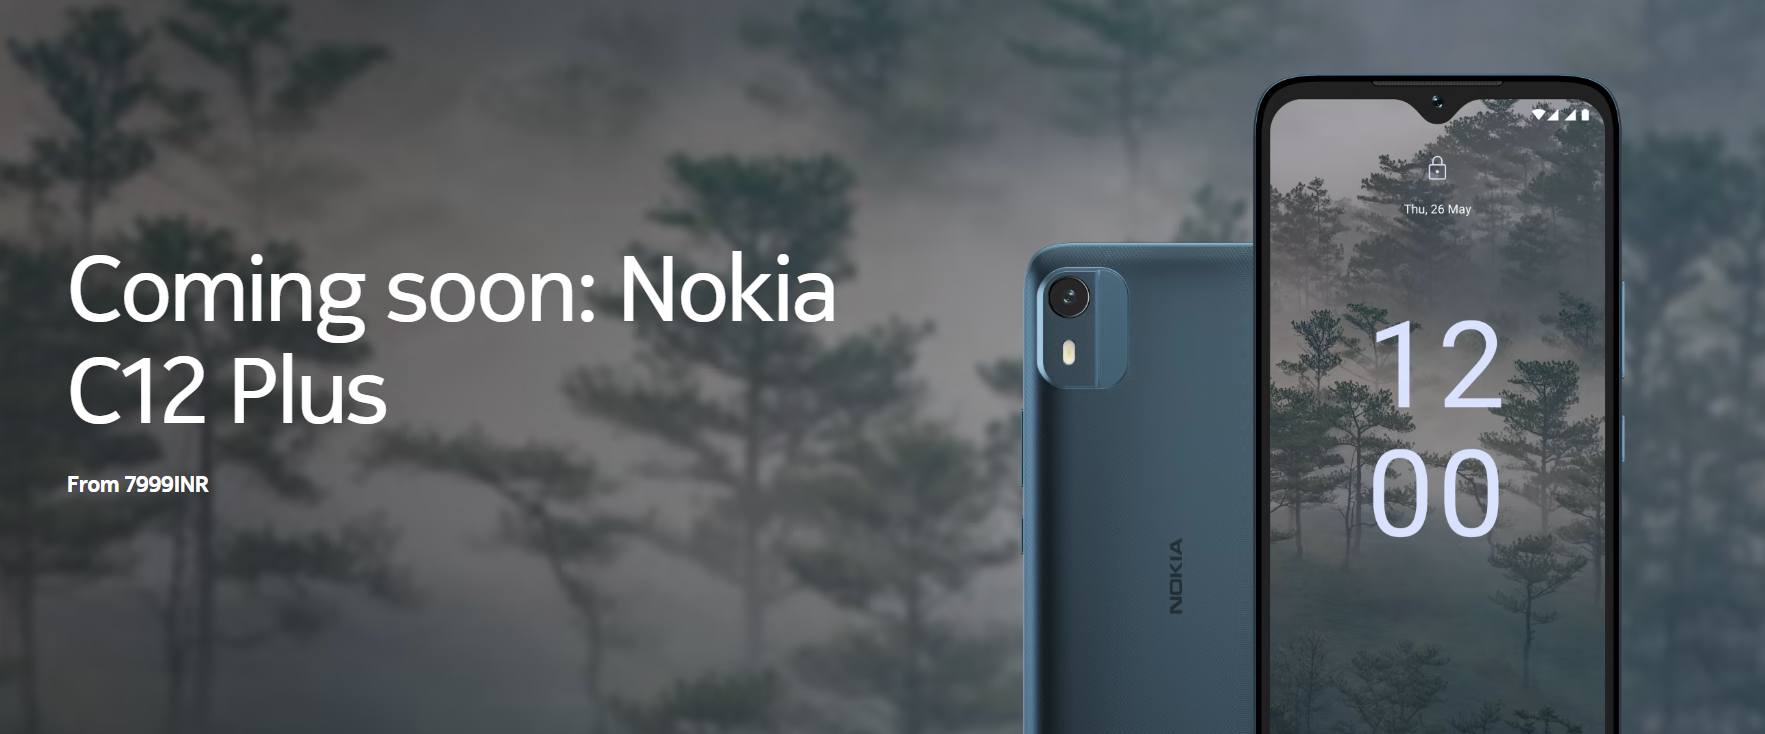 Nokia C12 Plus - Android 12 Go, wyświetlacz HD+ i 28nm układ UNISOC w cenie 90 dolarów